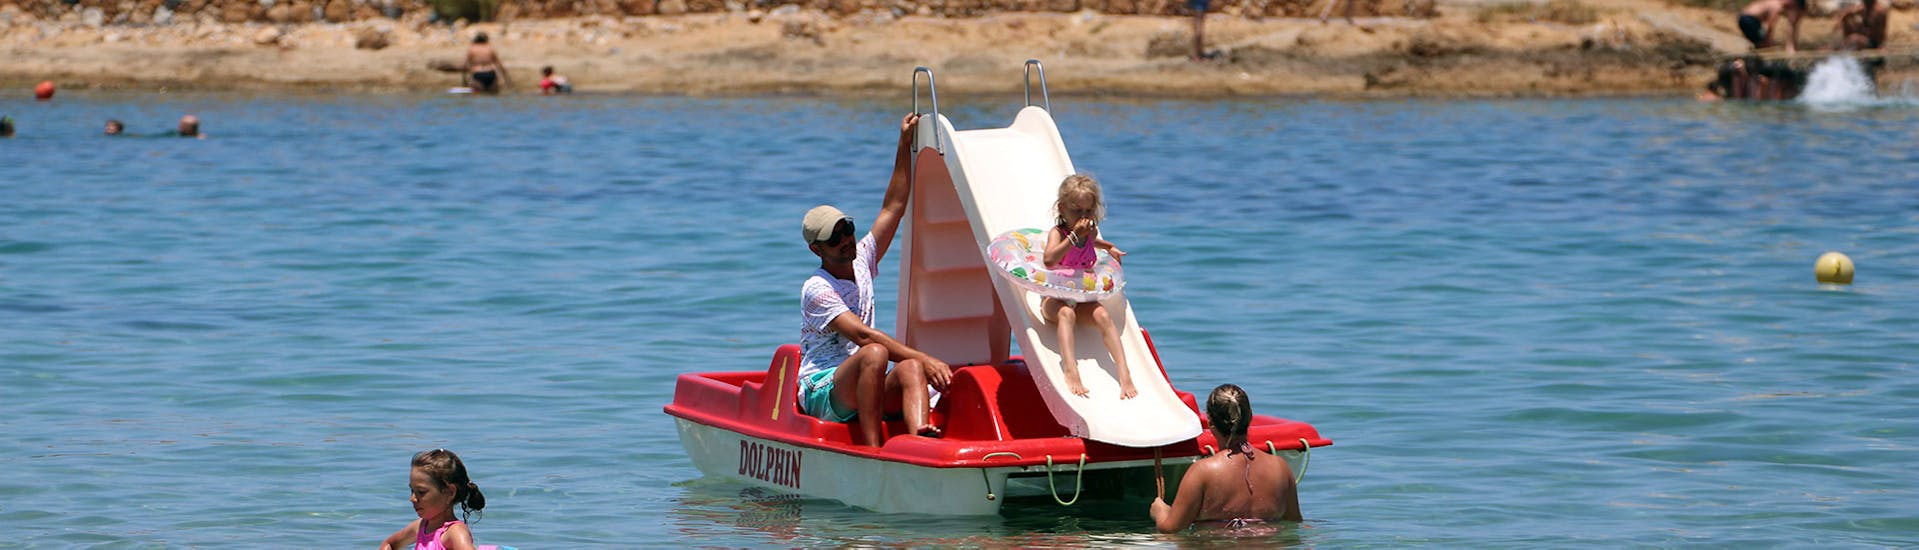 Una familia se divierte alrededor del bote a pedales durante el Pedal Boat en la playa de Malia en Creta con Dolphin Water Sports.